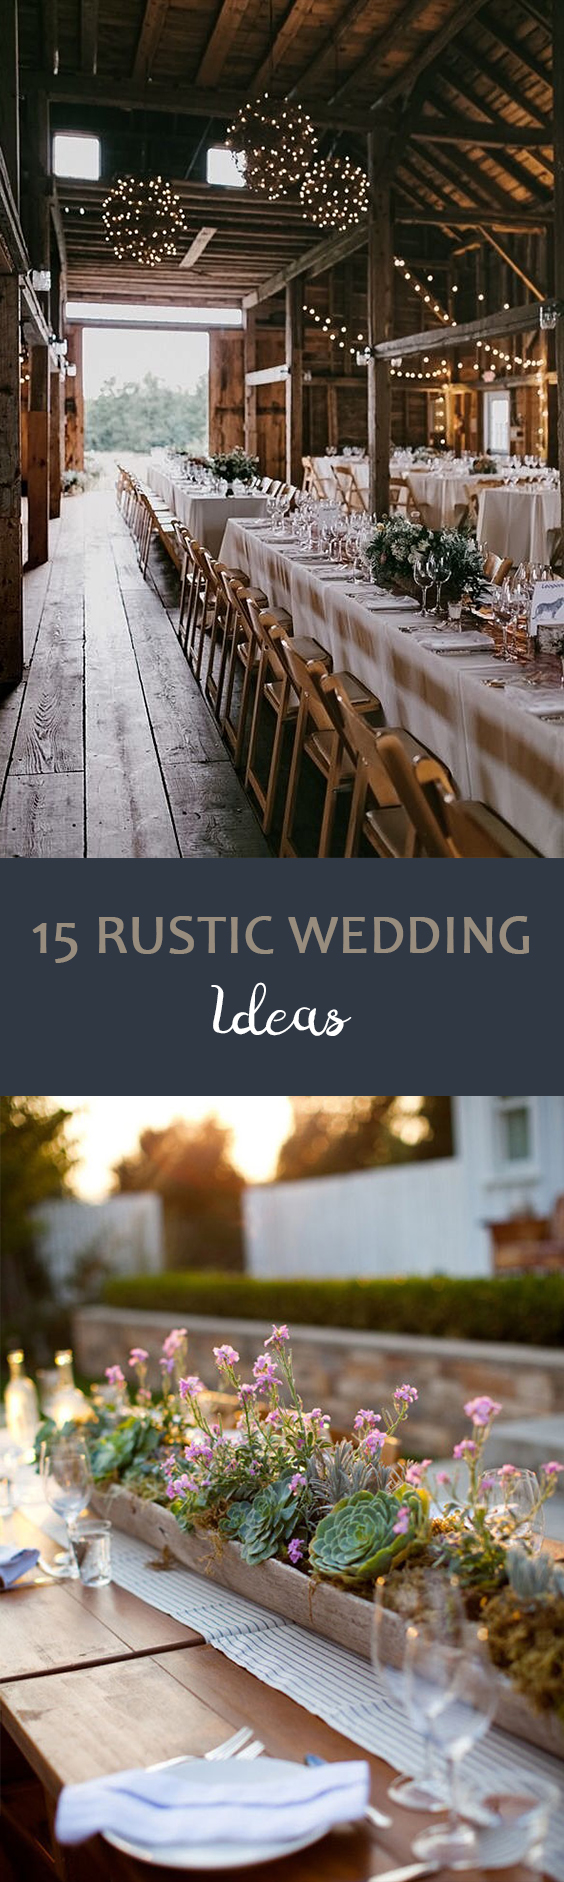 15-rustic-wedding-ideas Rustic Wedding | Rustic Wedding Ideas | Wedding Planning | Wedding Planning Ideas | Rustic Wedding Decorations | Rustic Wedding Decor